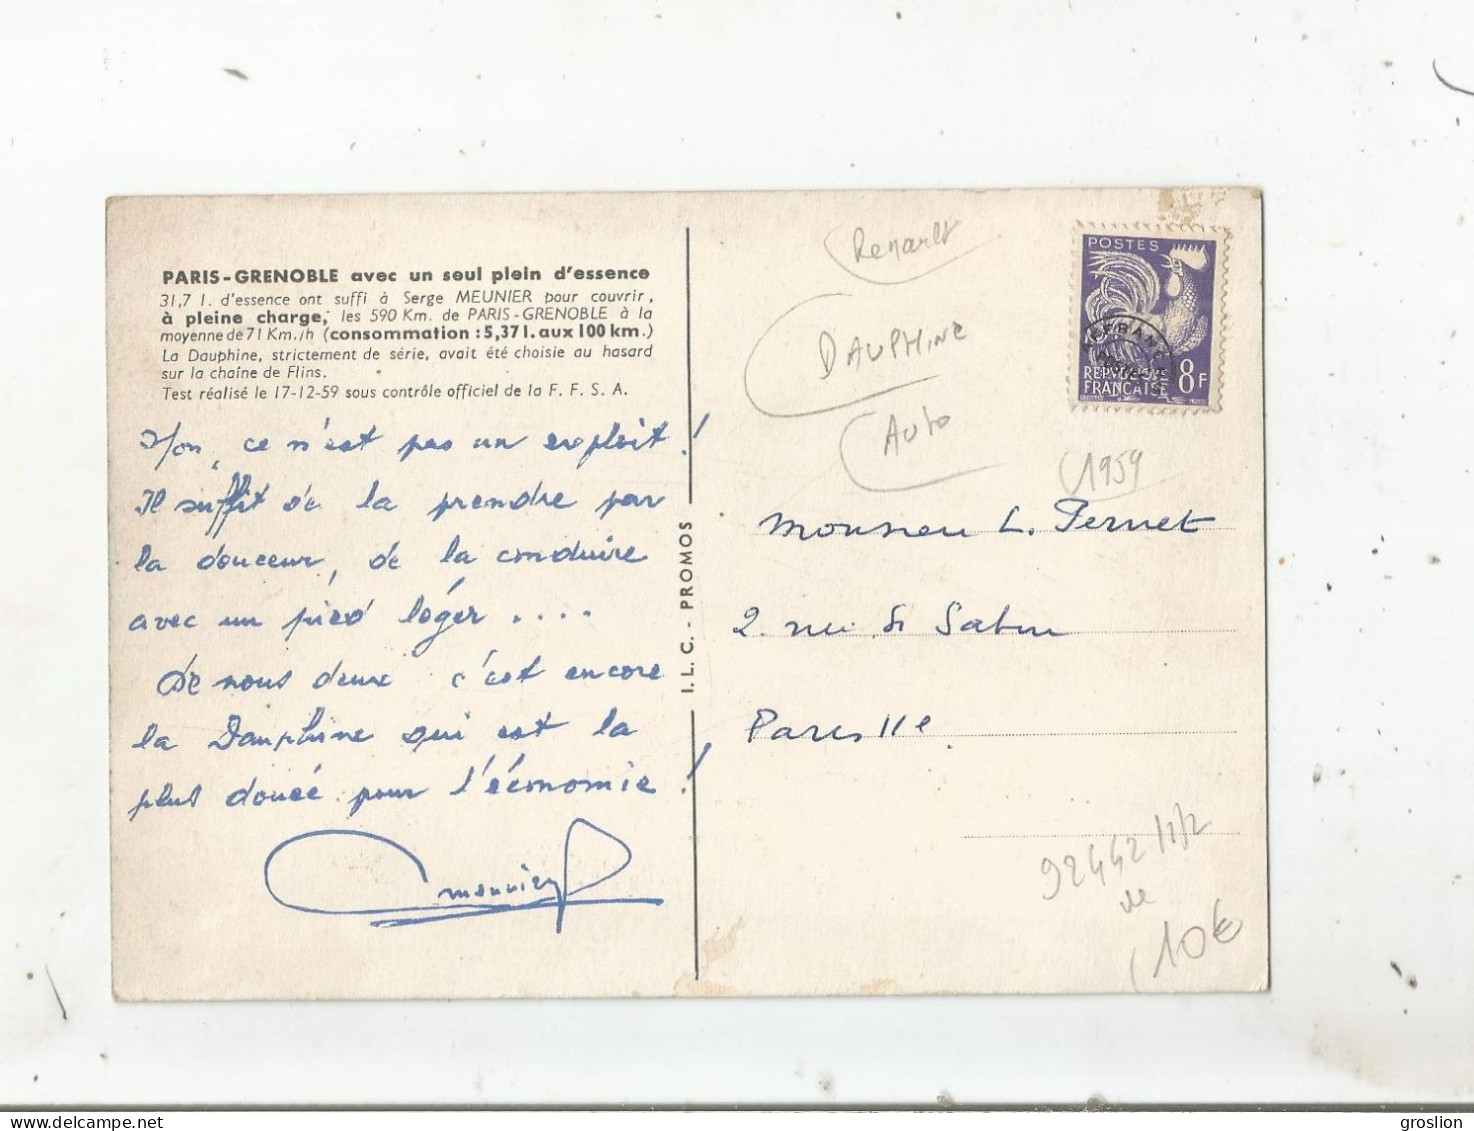 RENAULT DAUPHINE PARIS GRENOBLE AVEC UN SEUL PLEIN D'ESSENCE 1959 - PKW